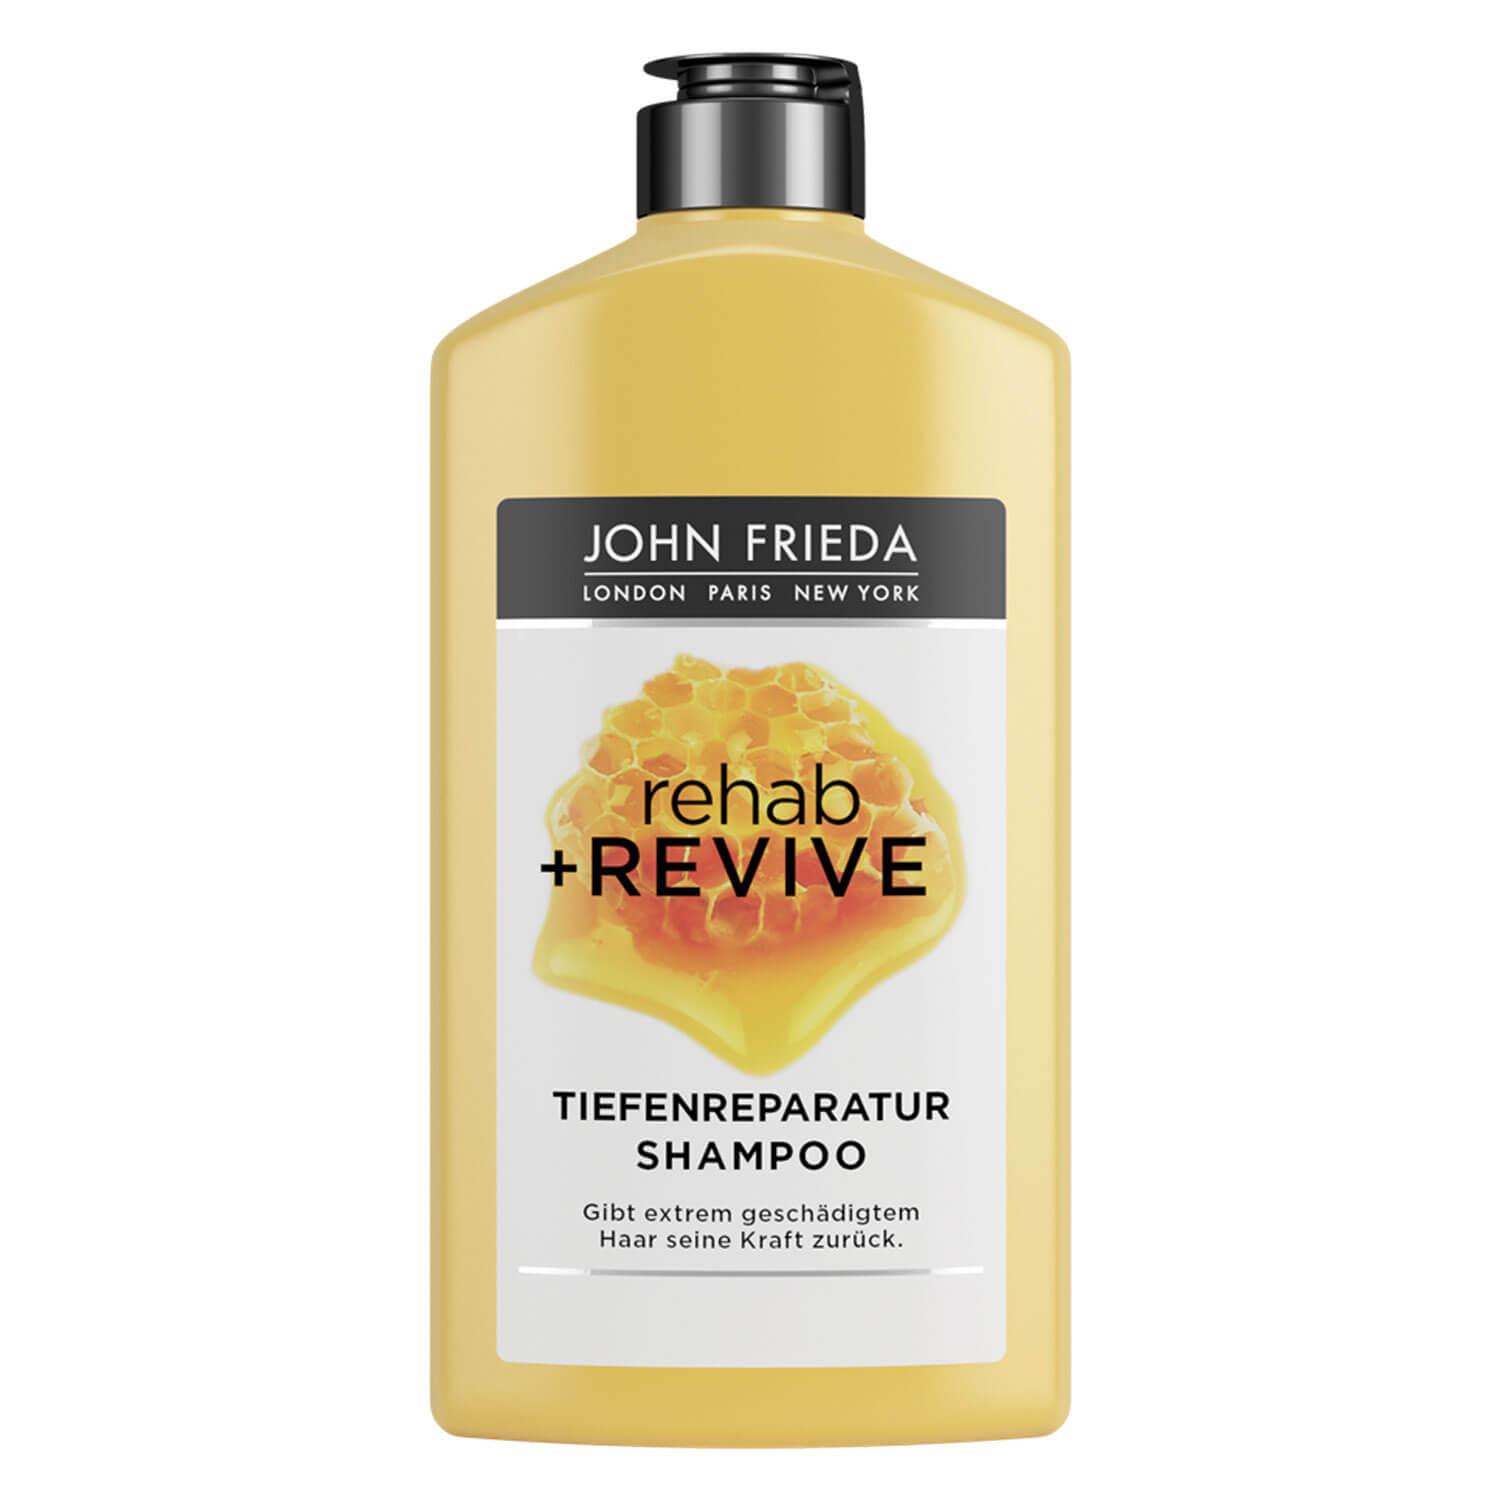 Rehab + Revive - Tiefenreparatur Shampoo